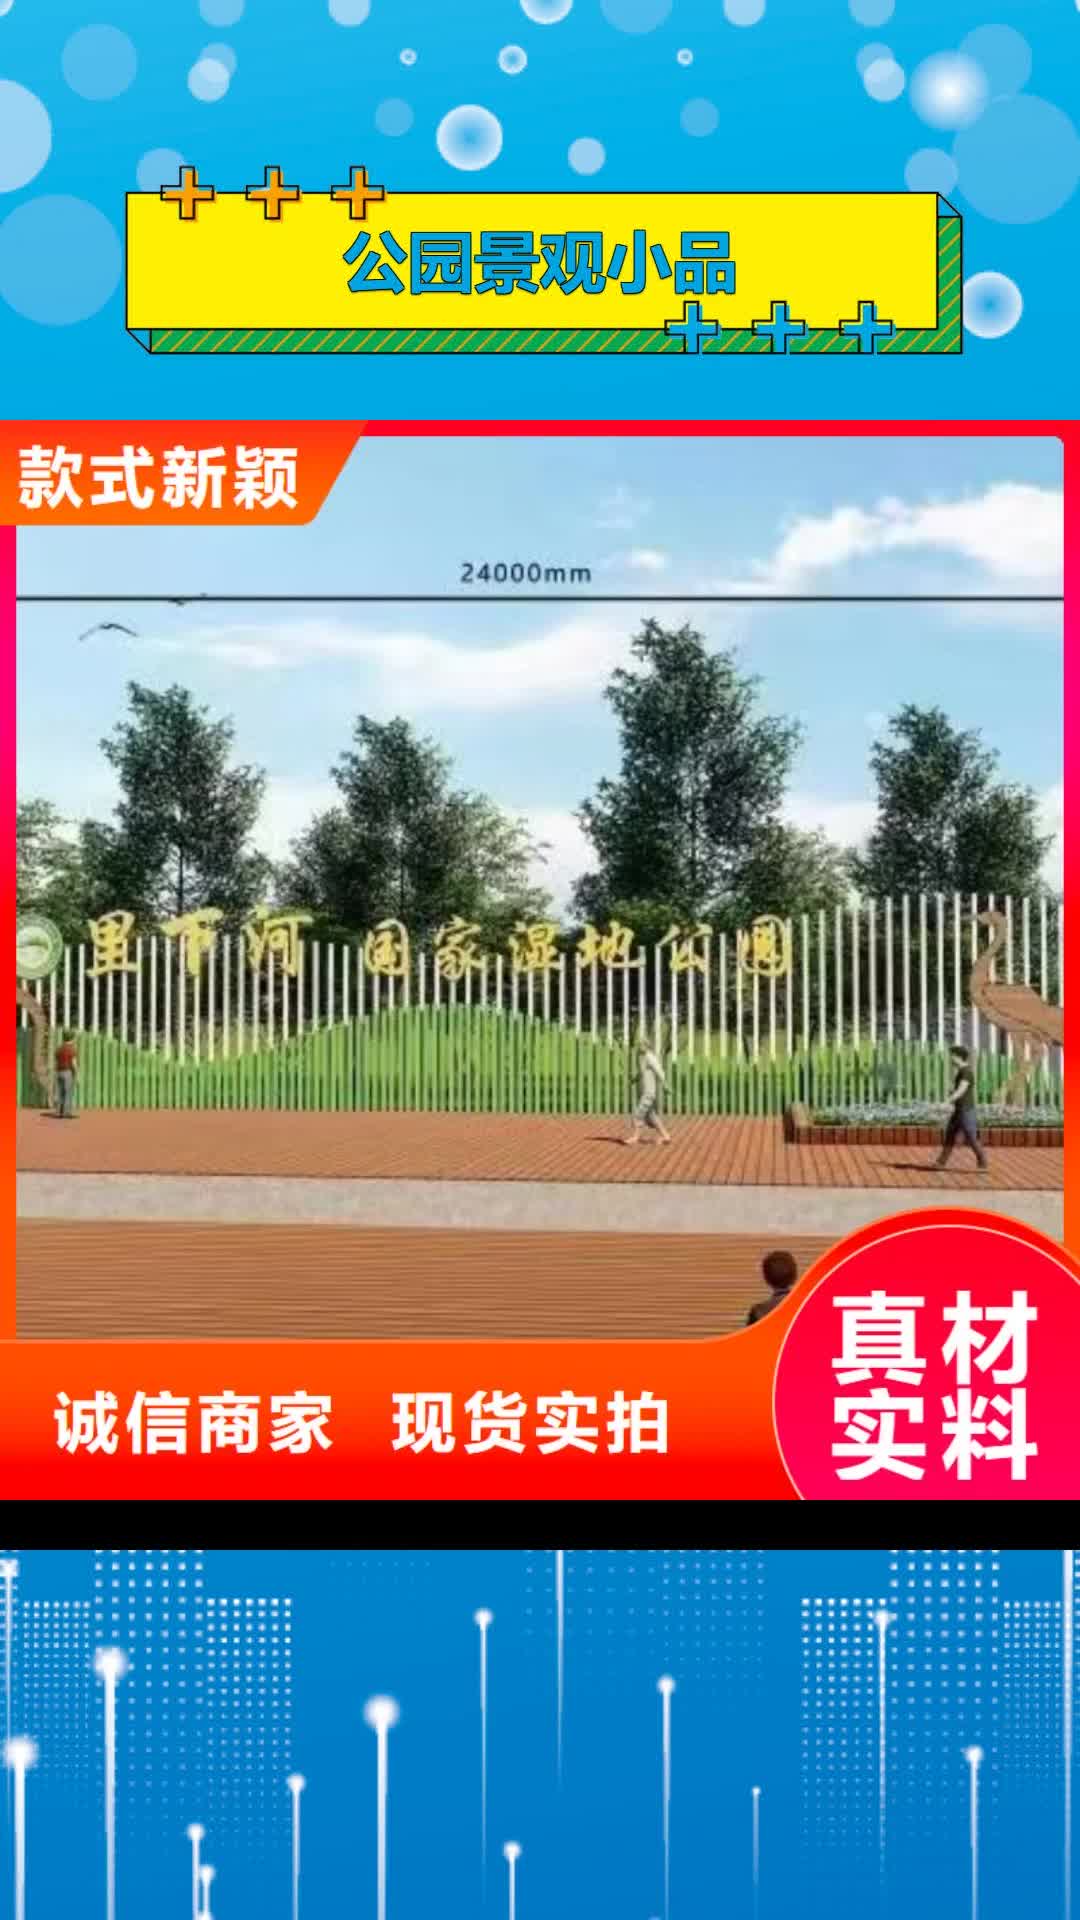 青海 公园景观小品-【公共吸烟亭】设计合理